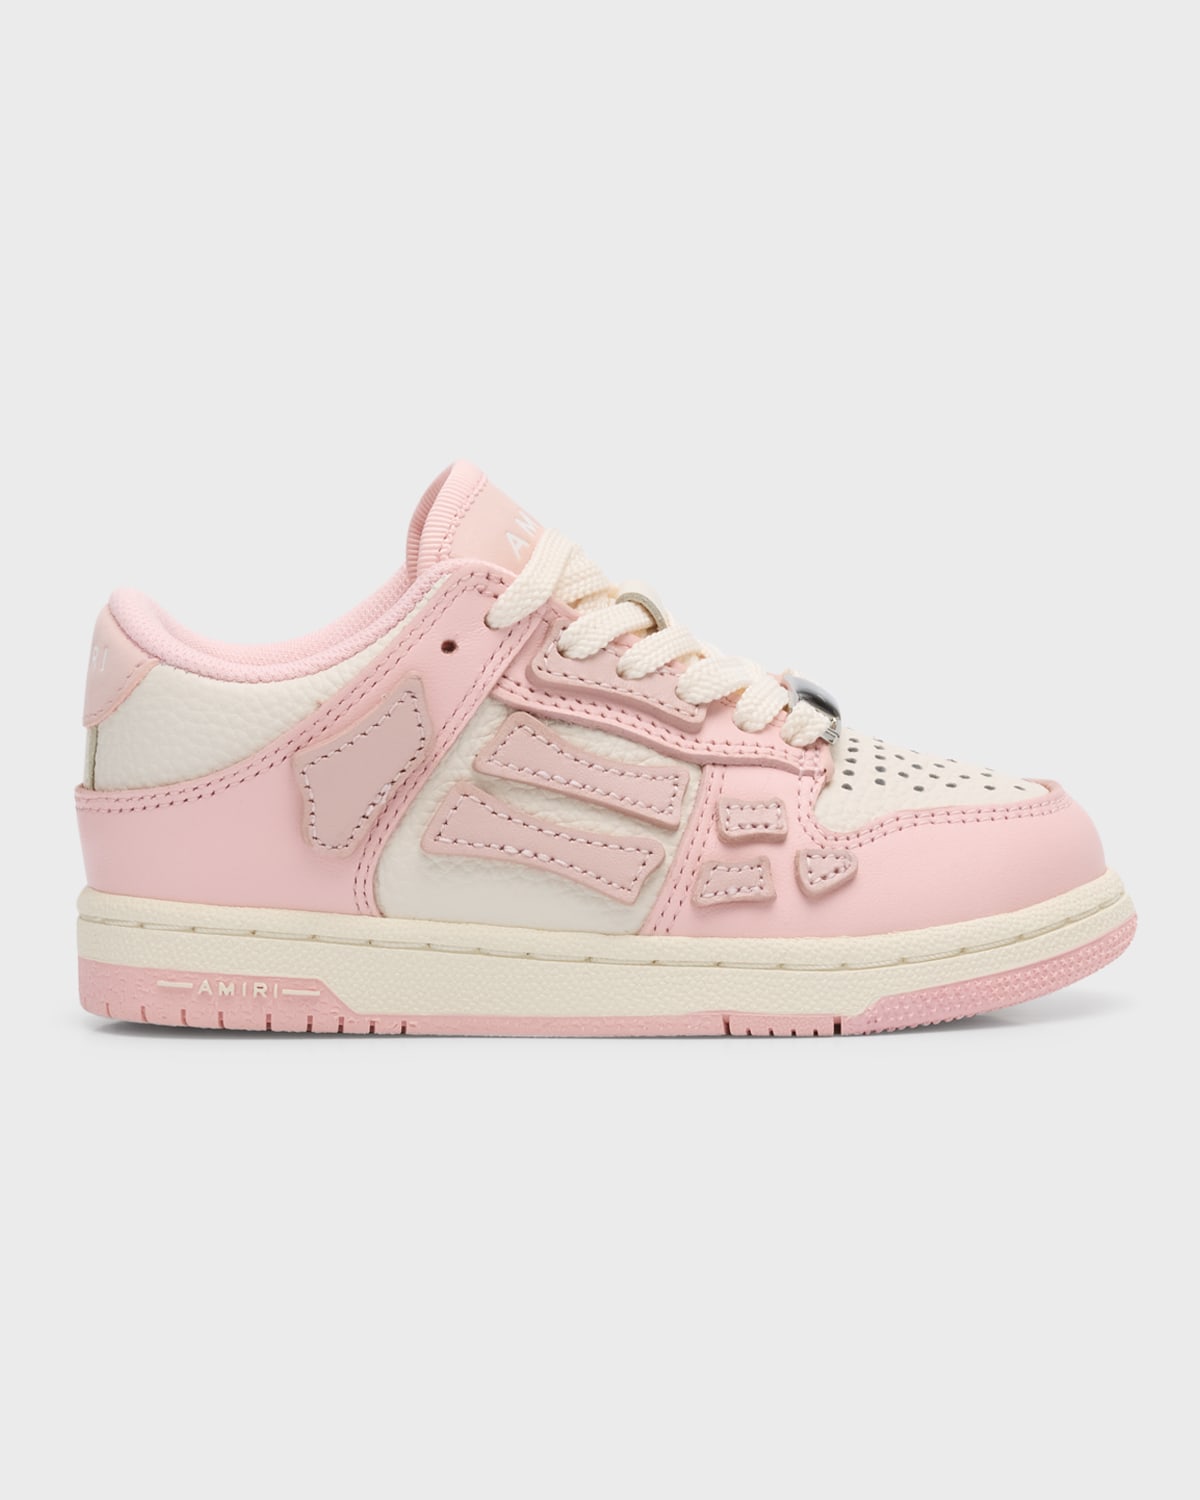 Amiri Kid's Skel Low-top Leather Sneakers, Toddlers/kids In Pink